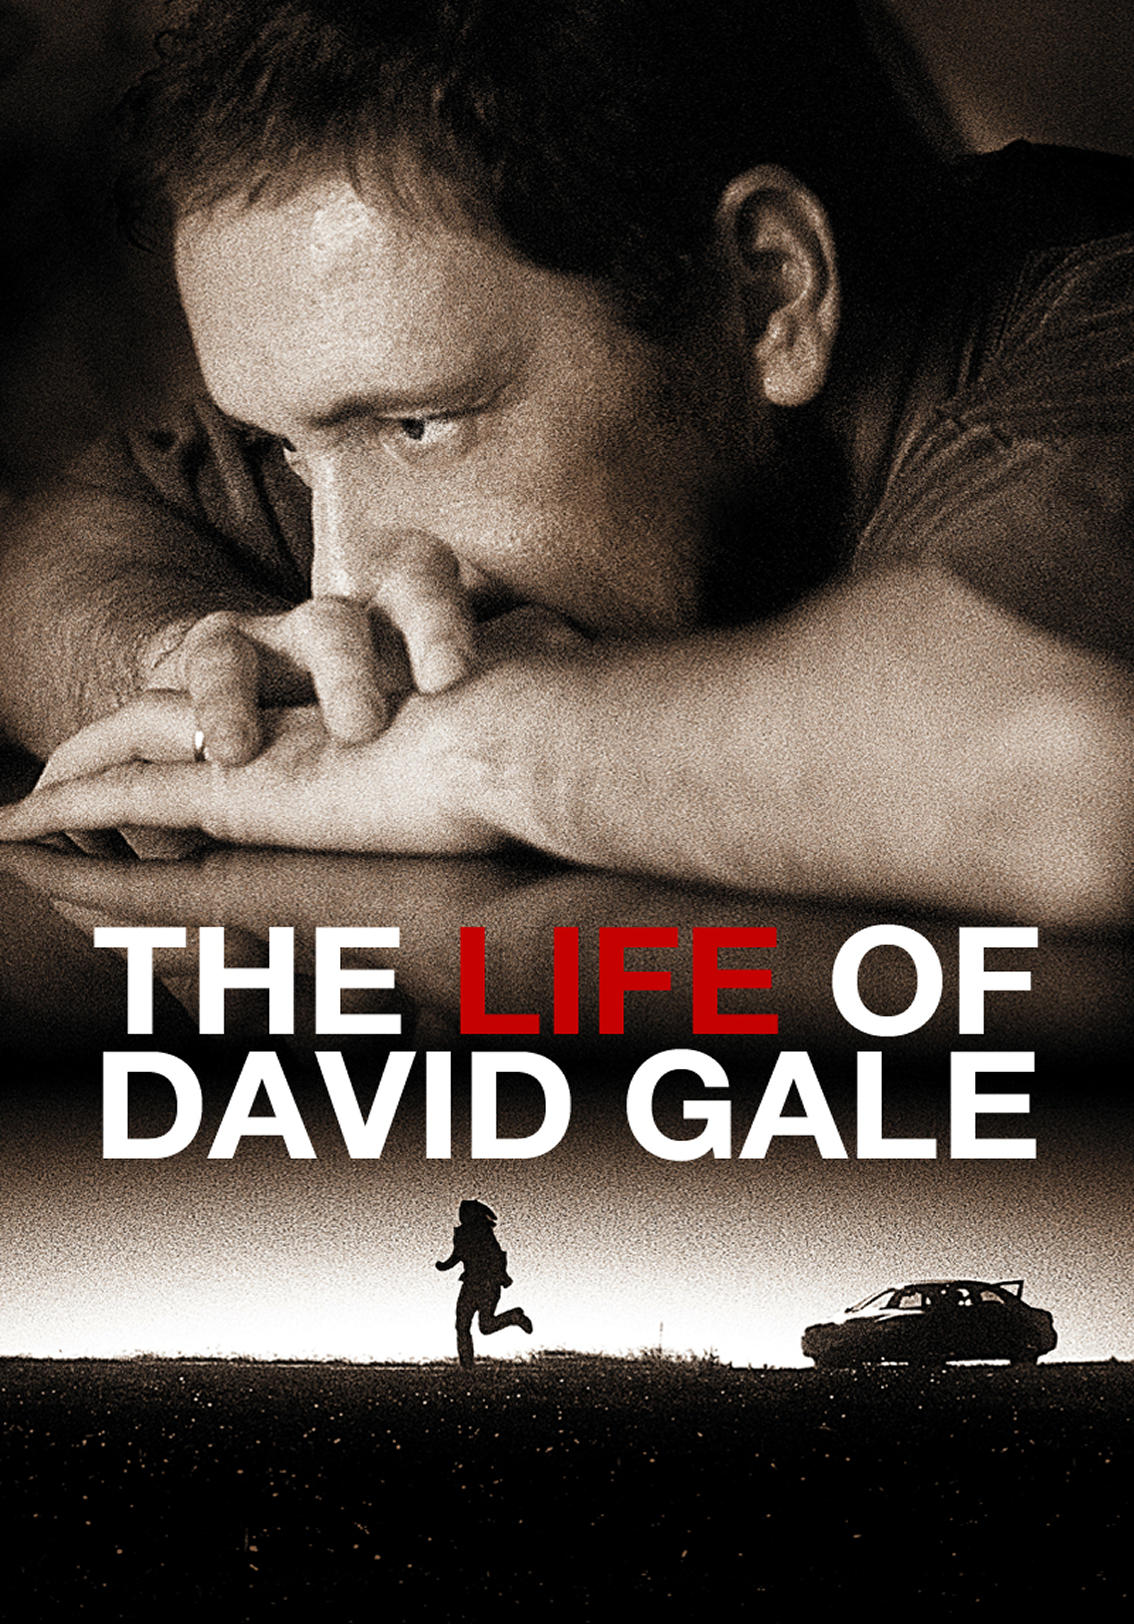 Дэвид гейл на реальных событиях. Кевин Спейси жизнь Дэвида Гейла. Жизнь Дэвида Гейла Постер.